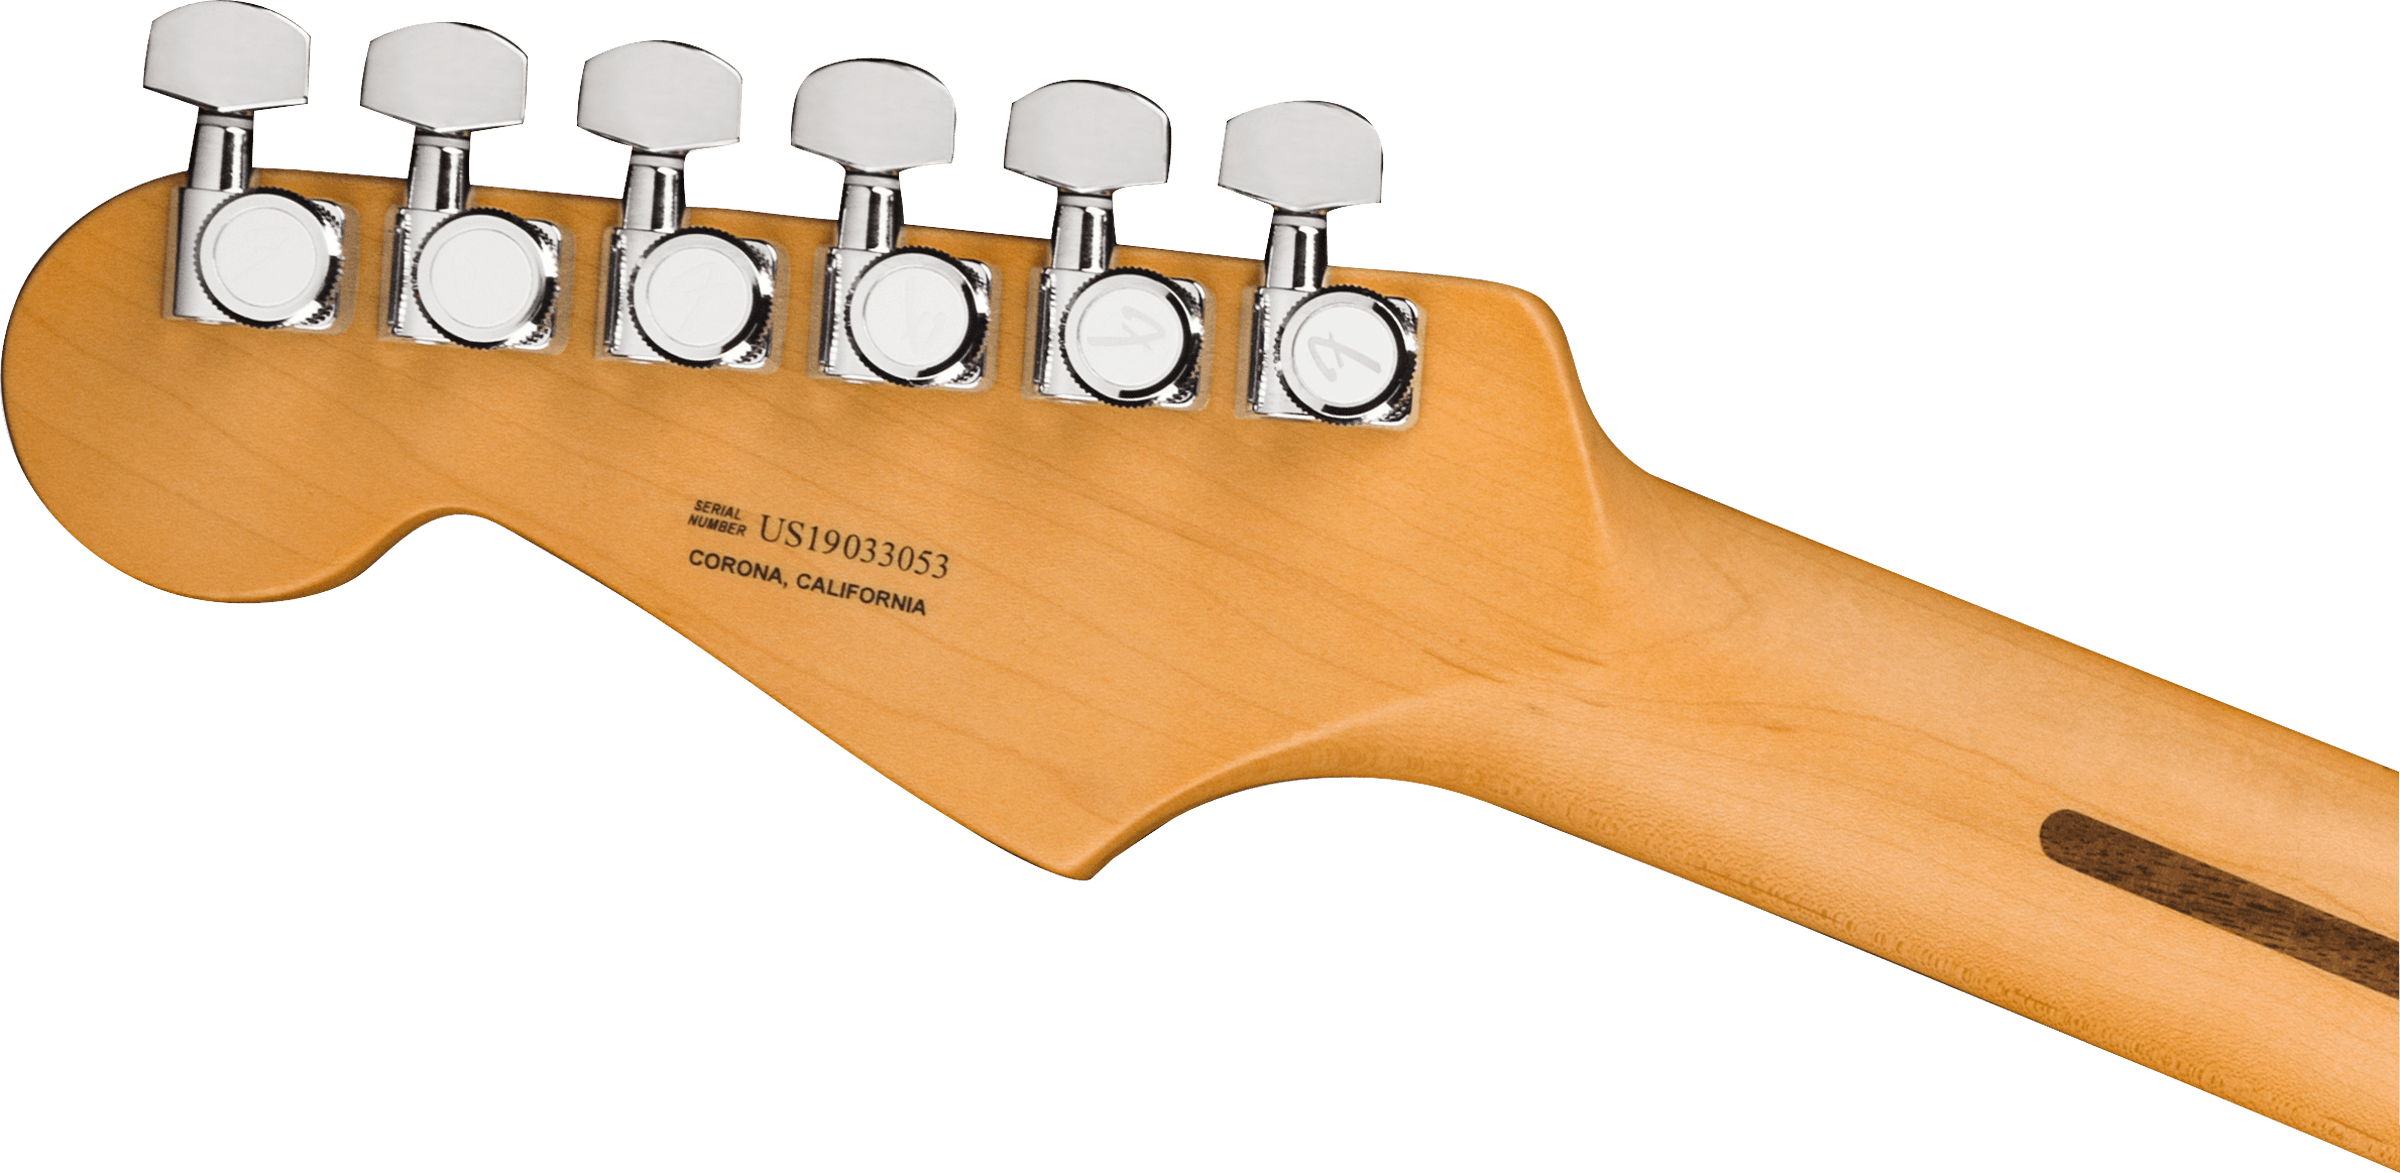 Fender American Ultra Stratocaster Maple Fingerboard Ultraburst 0118012712